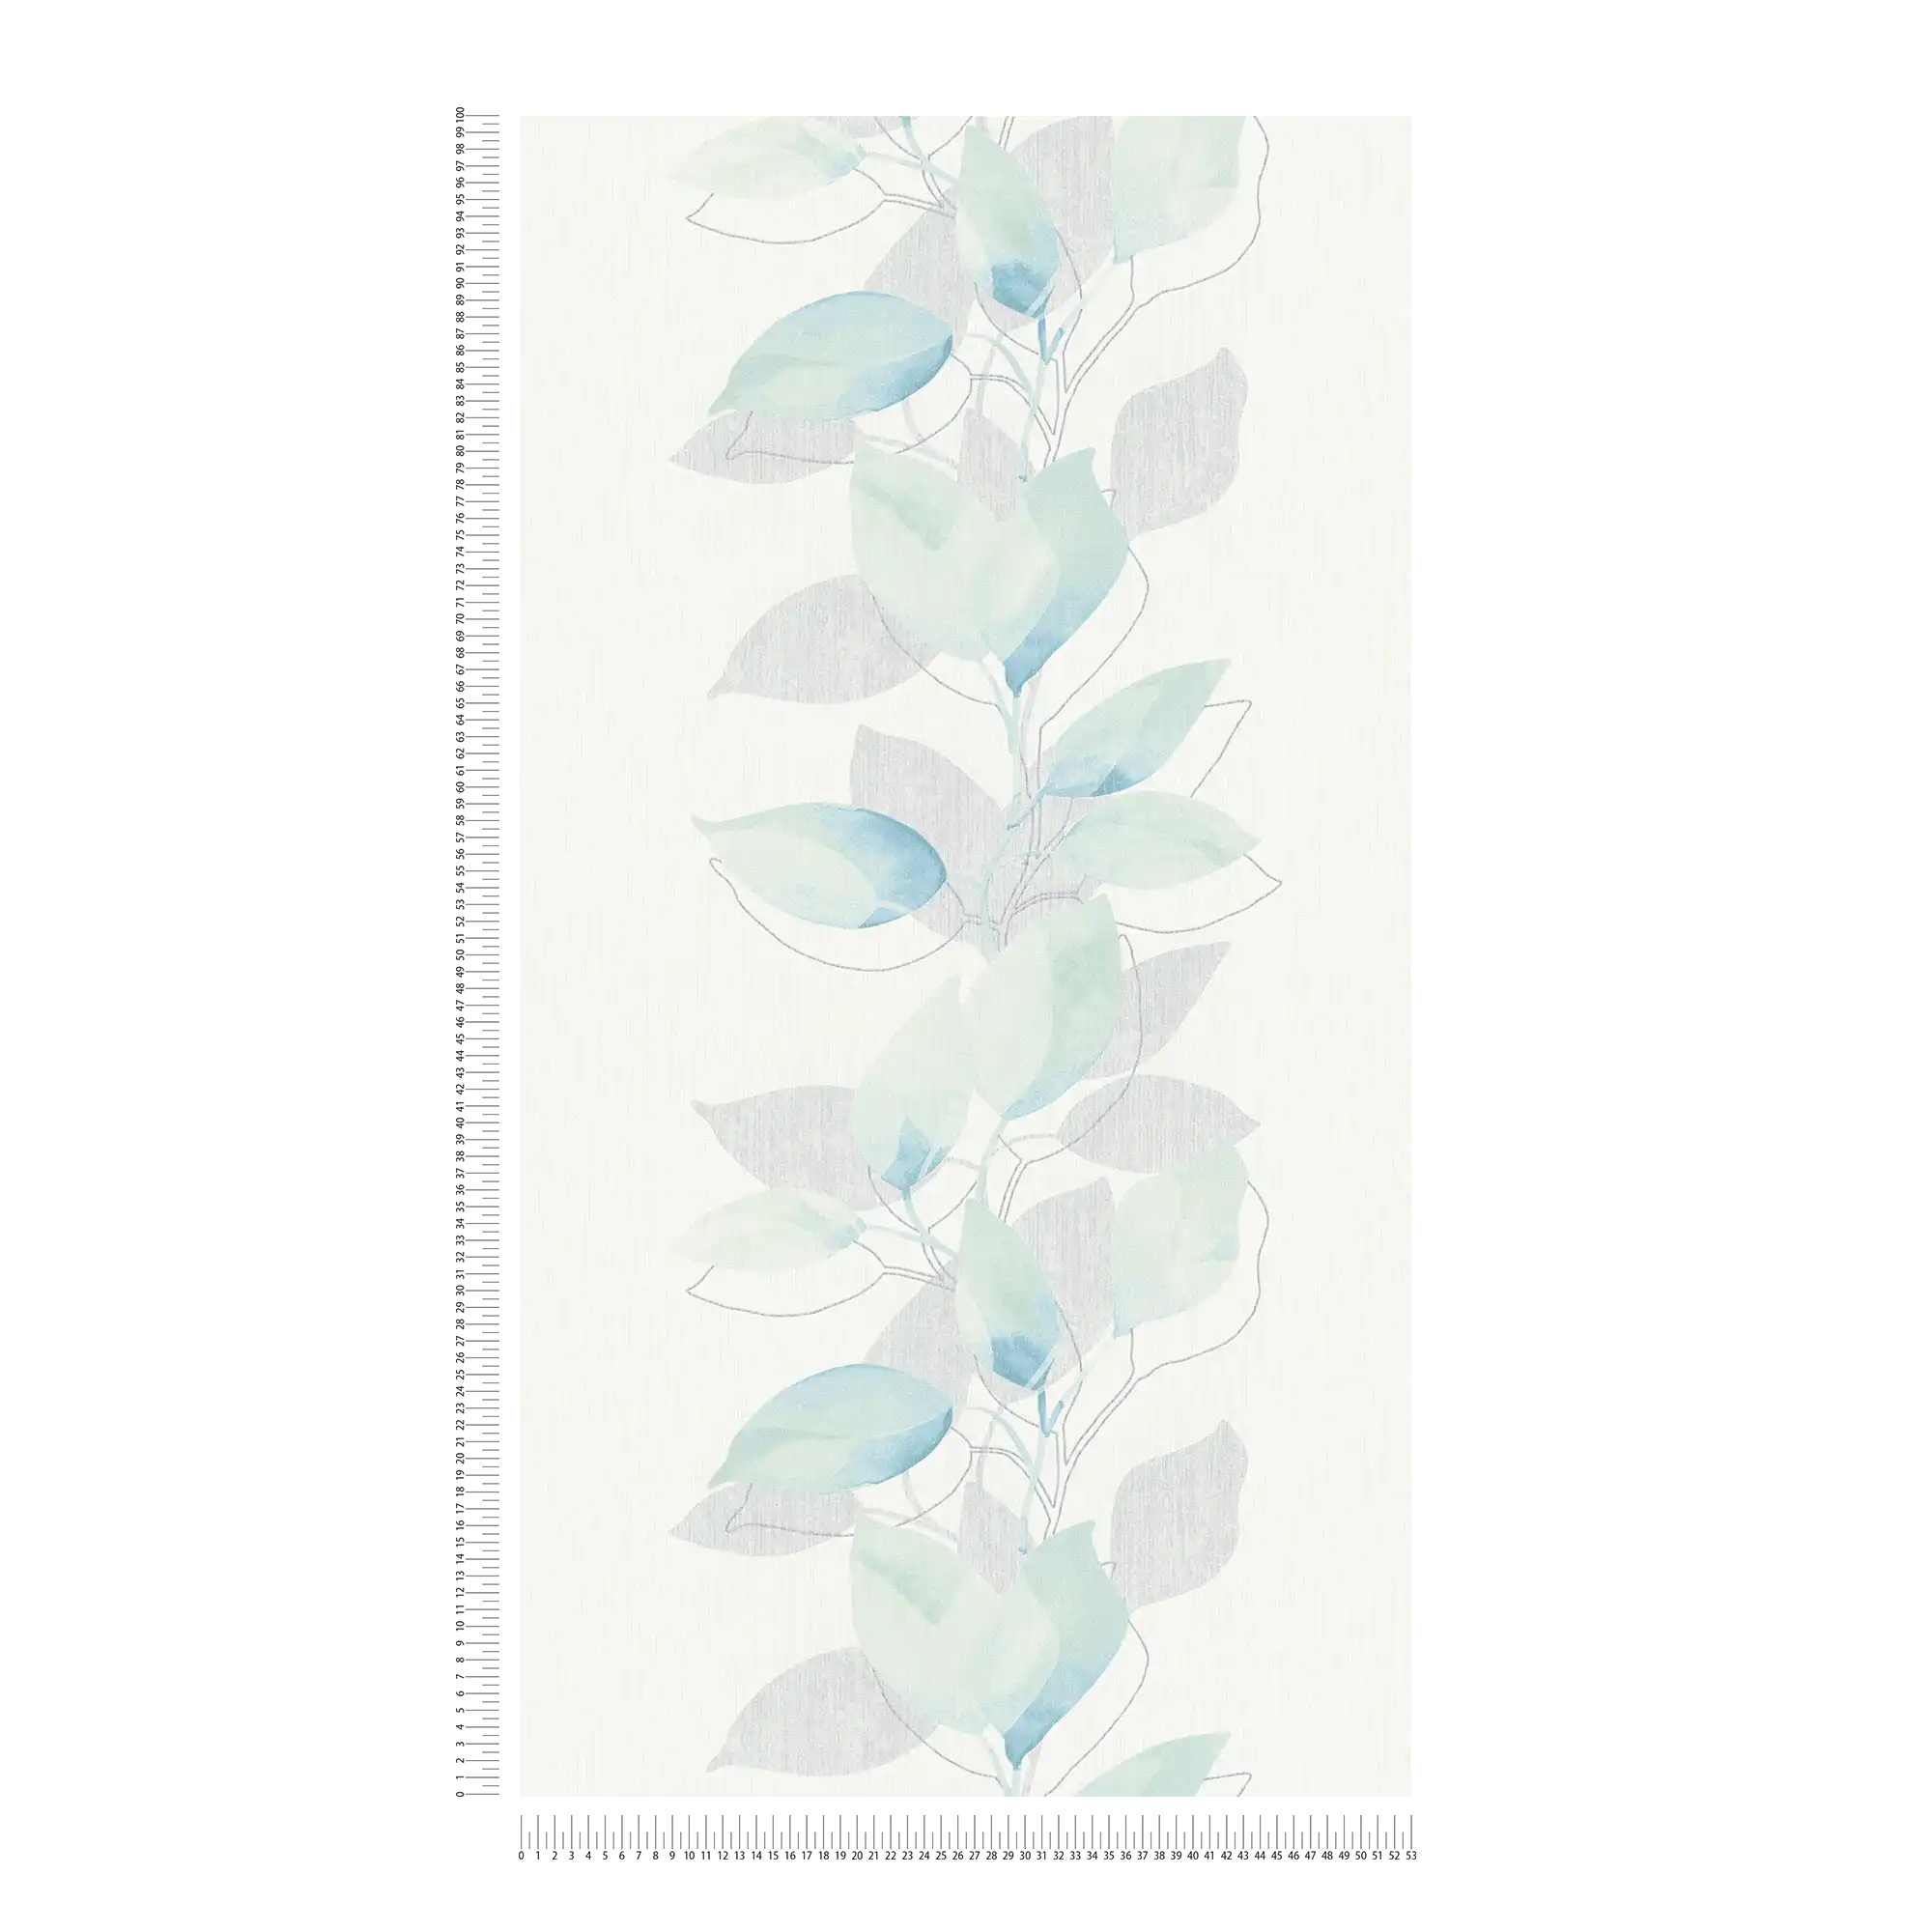             Carta da parati in tessuto non tessuto con foglie e motivi acquerellati - crema, blu
        